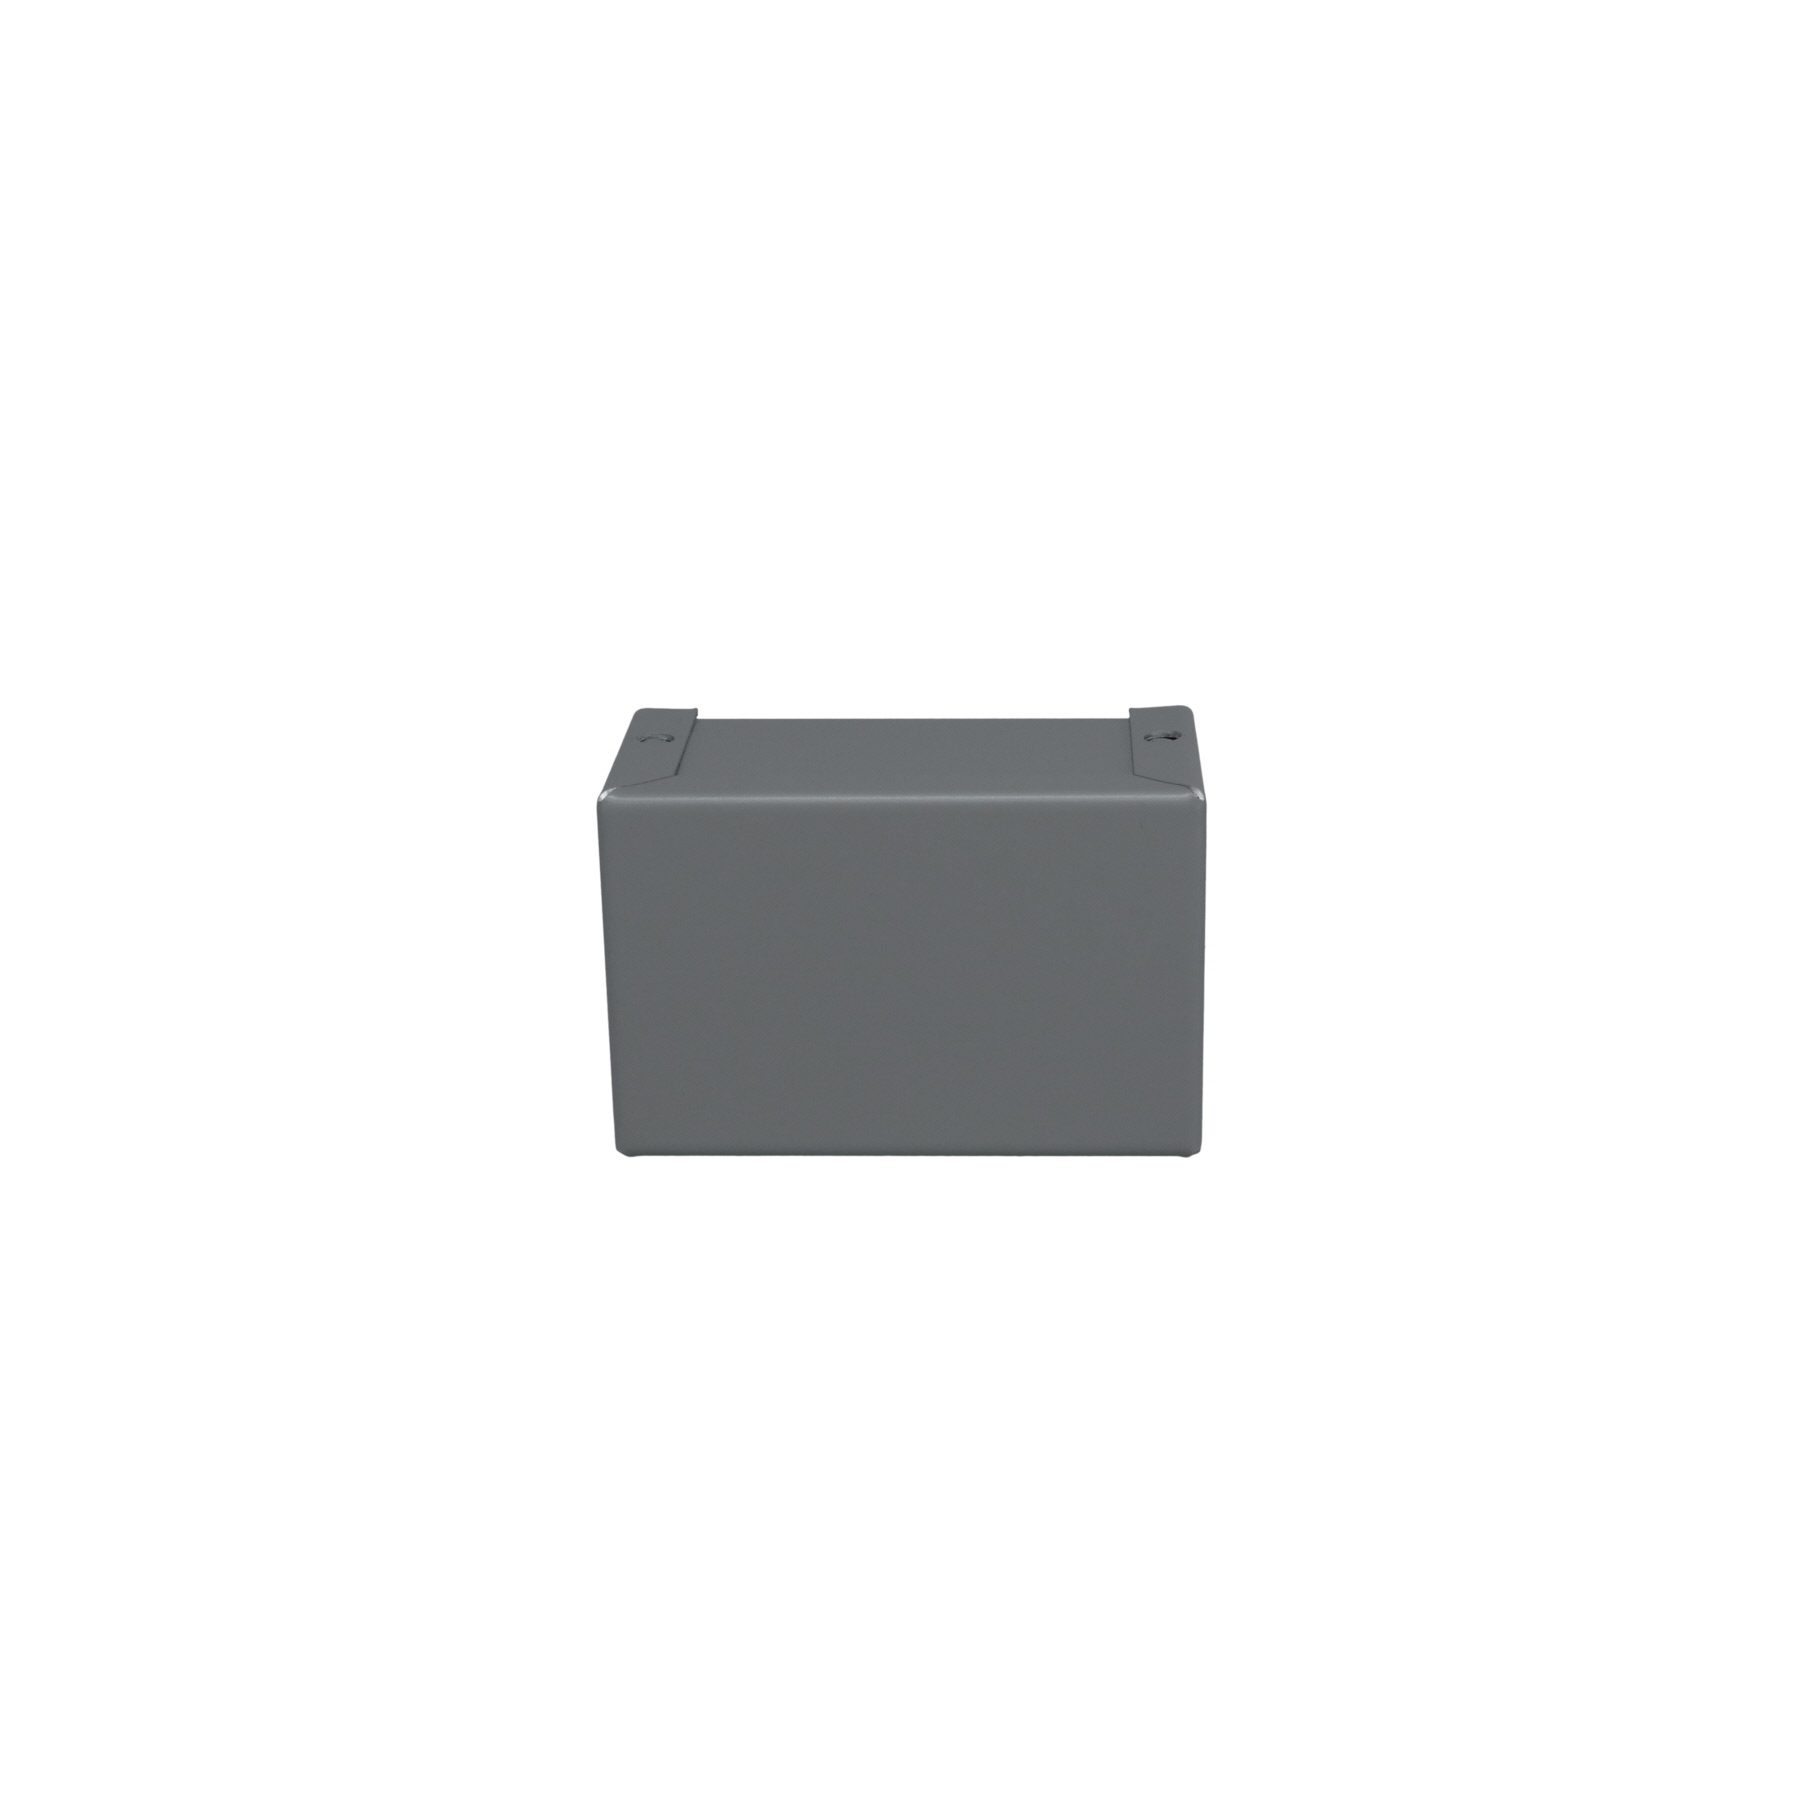 Minibox Small Metal Box Gray CU-2101-B